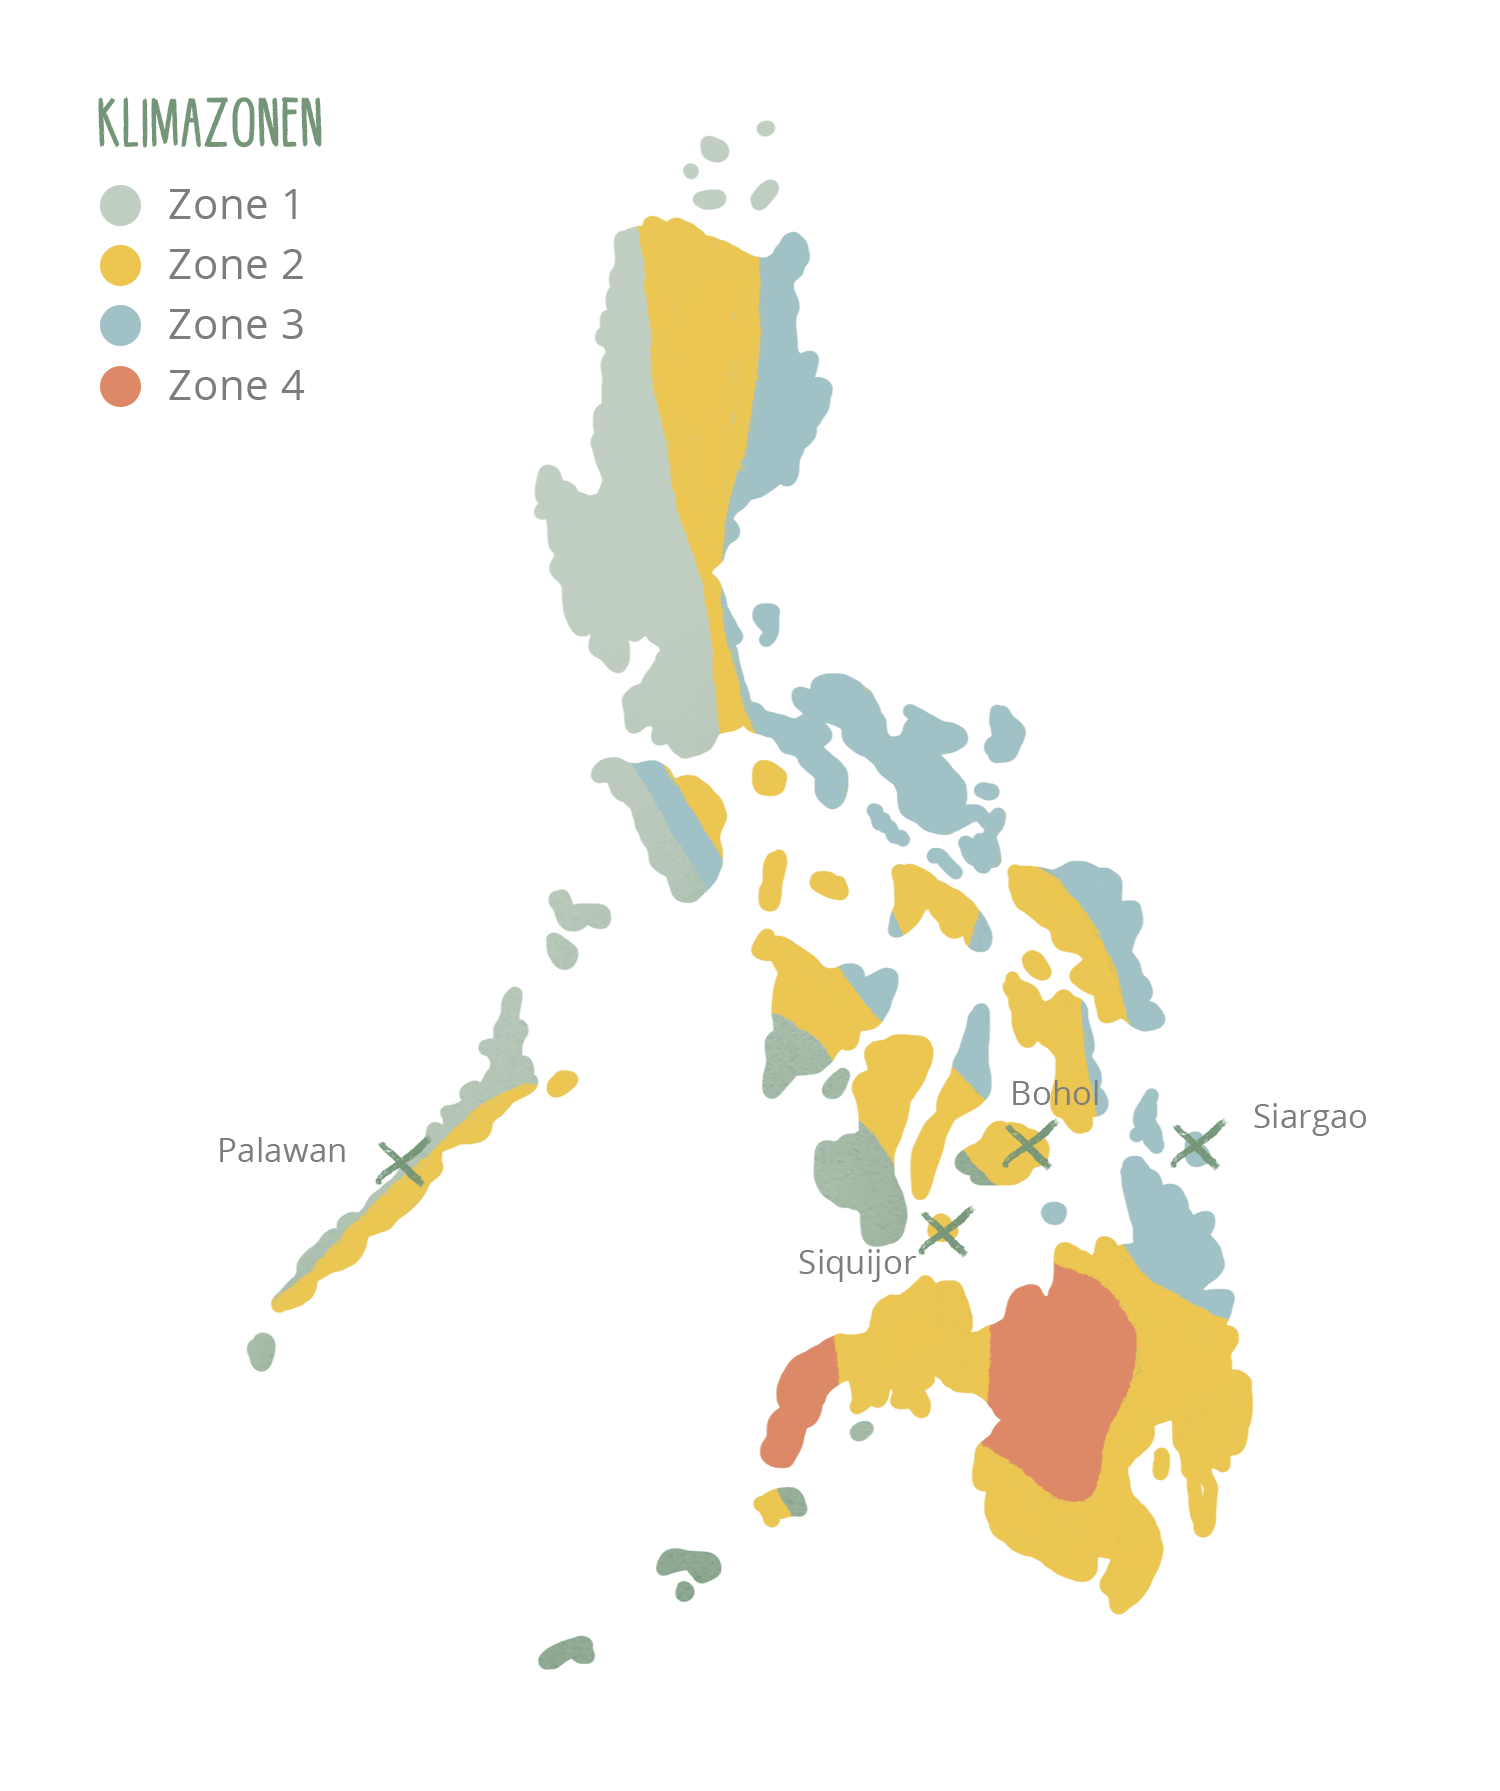 Philippinen: Klimazonen